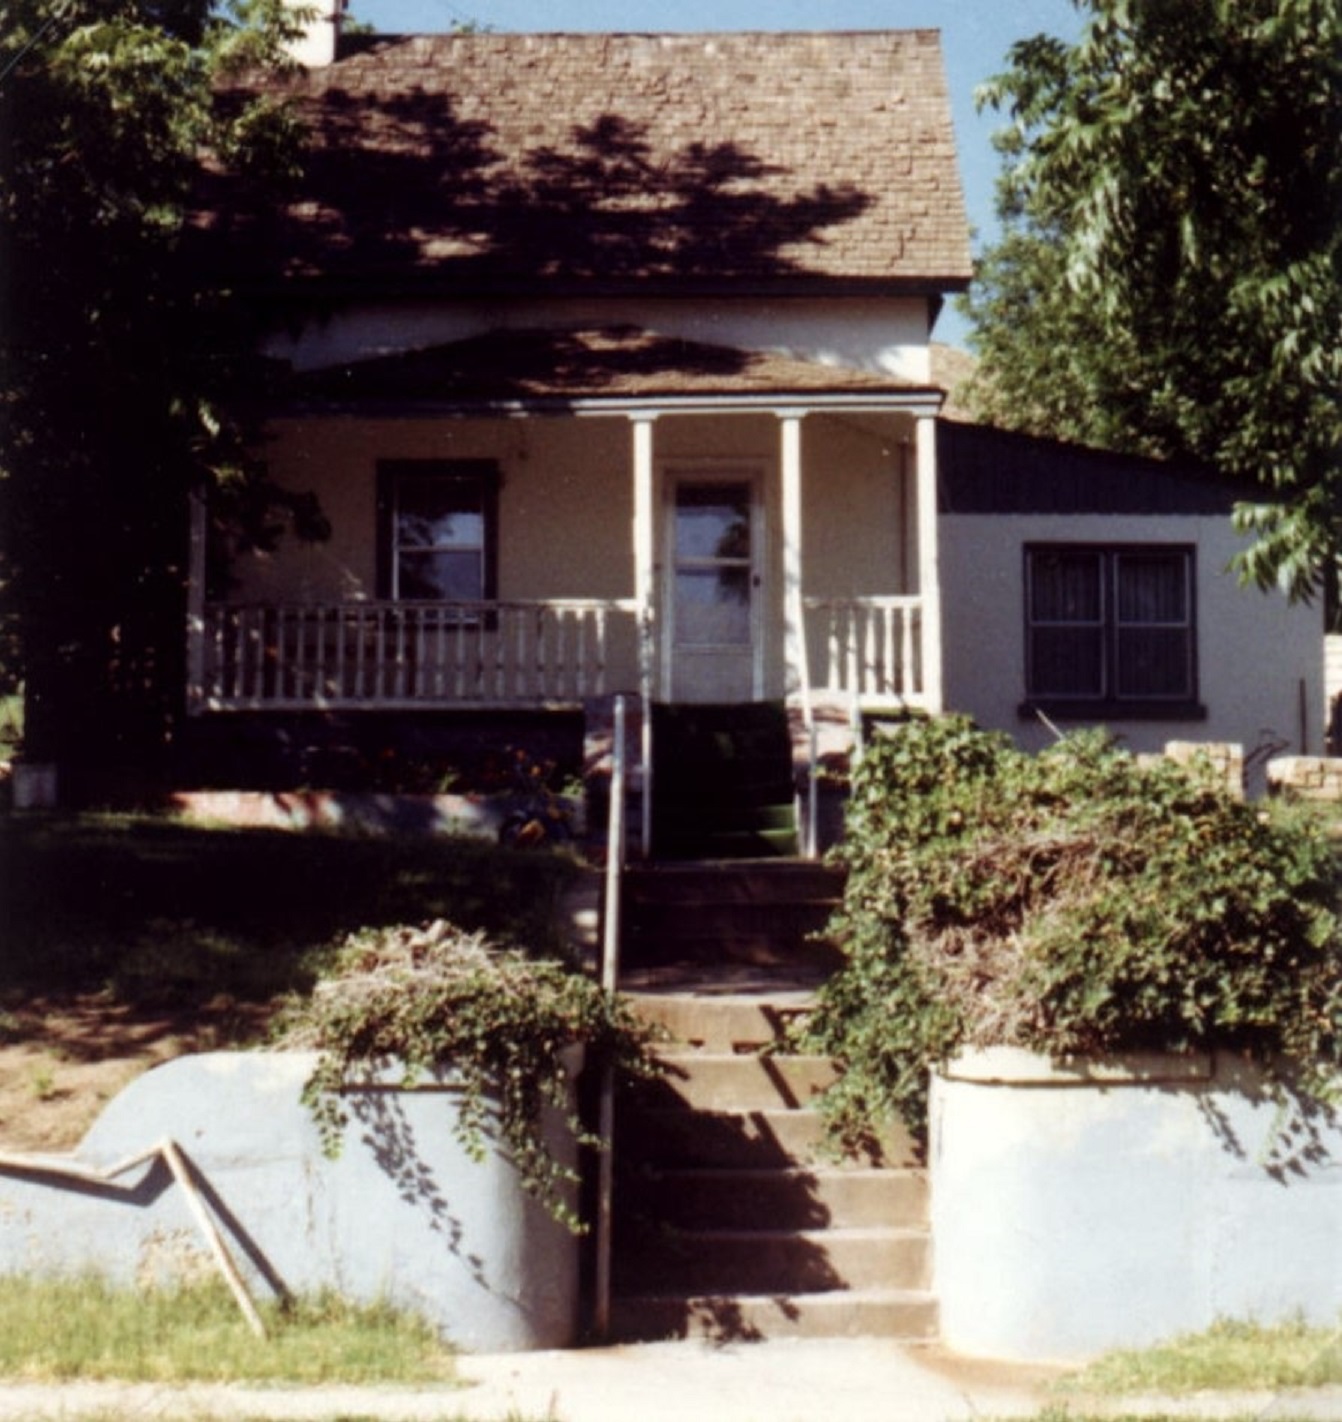 The Wilford & Etta McArthur Home